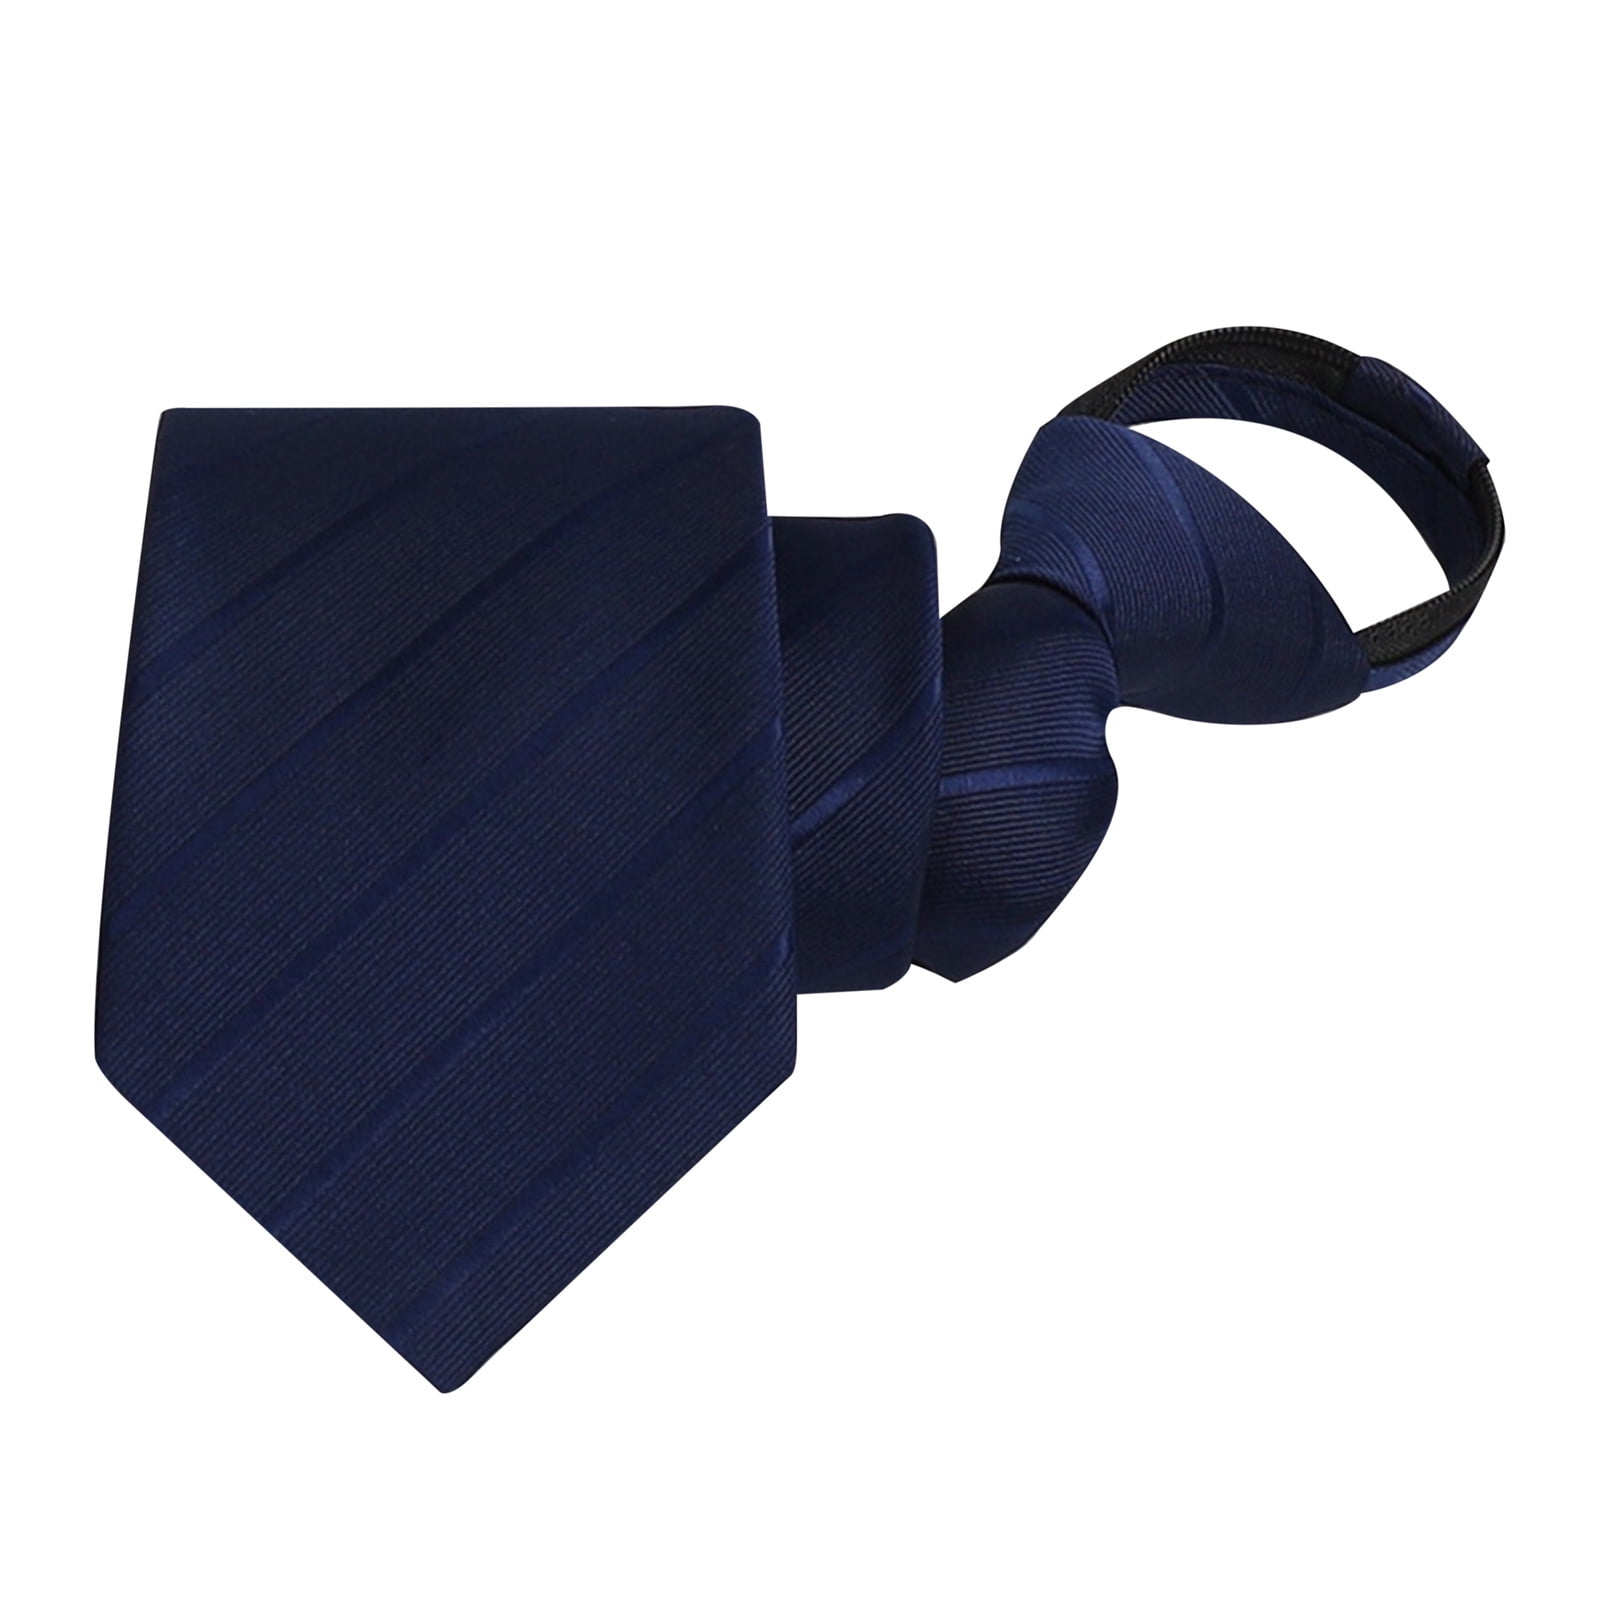 YUHAOTIN Men's Neckties Floral Men's Zipper Tie Woven Jacquard Tie ...